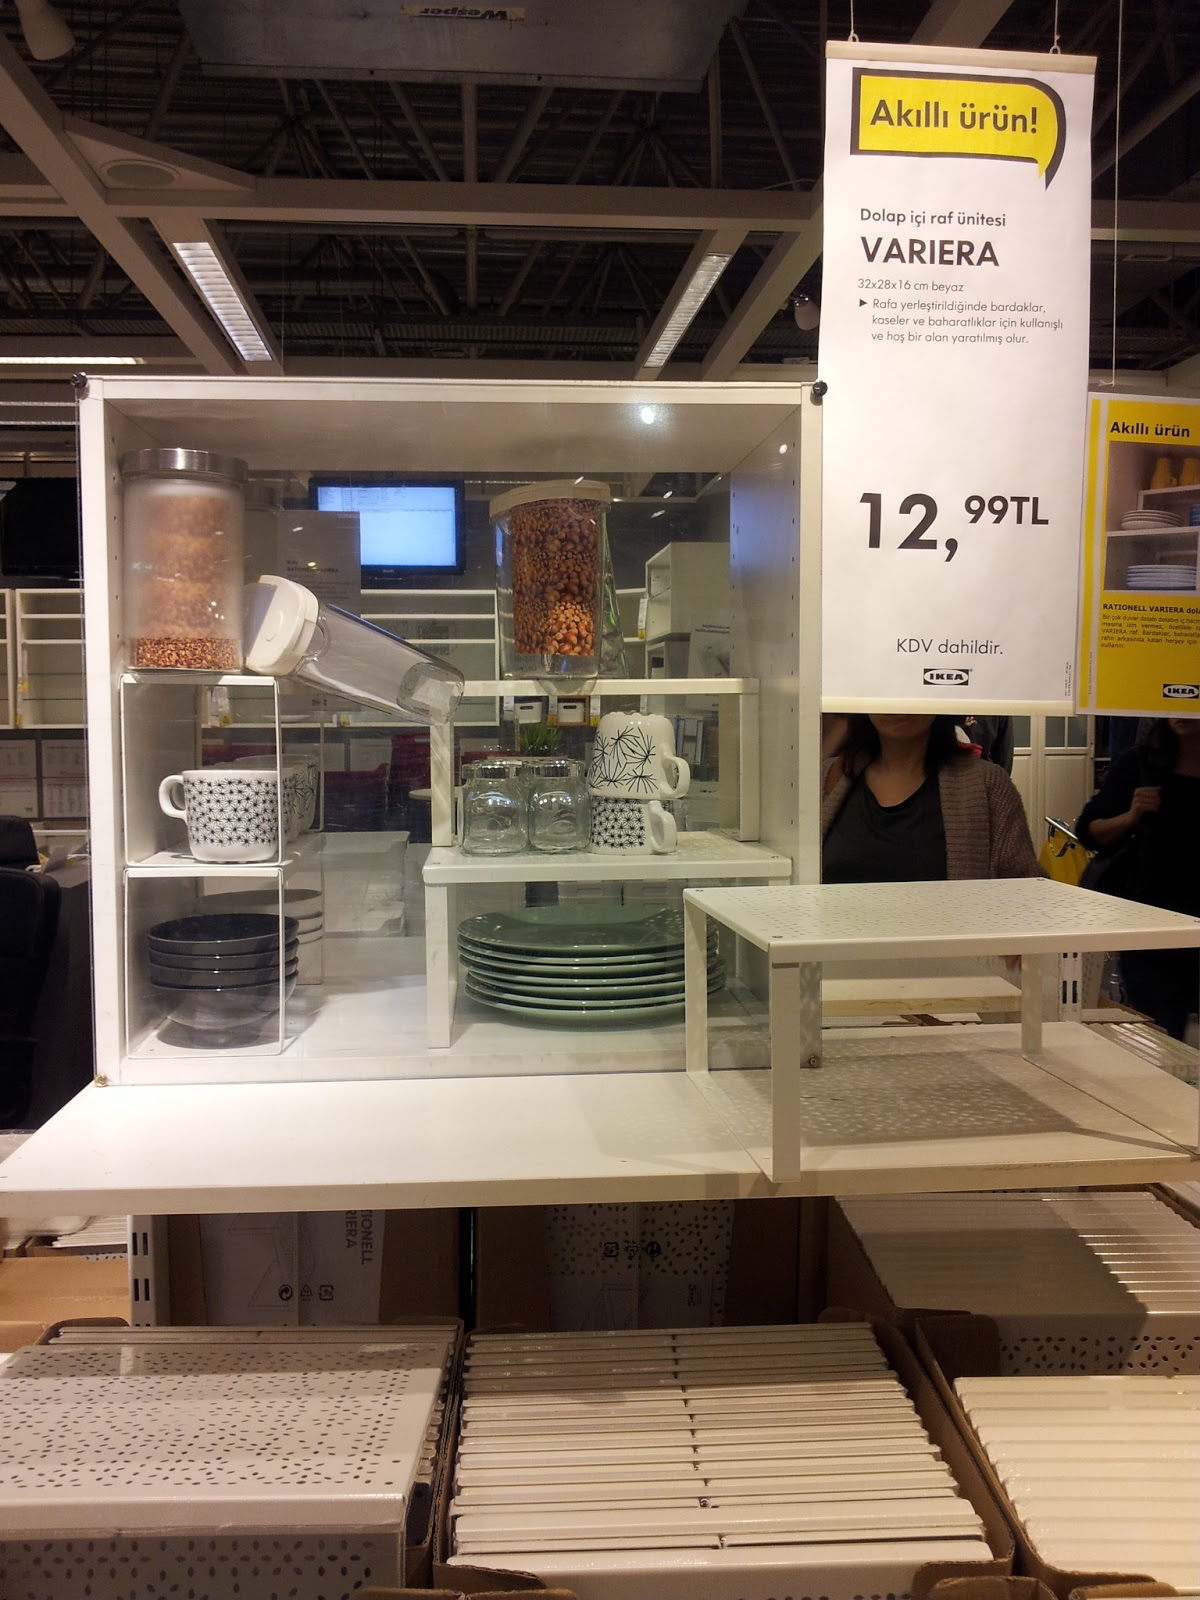  IKEA  dan Raf  ve Dolap  i D zenleyiciler